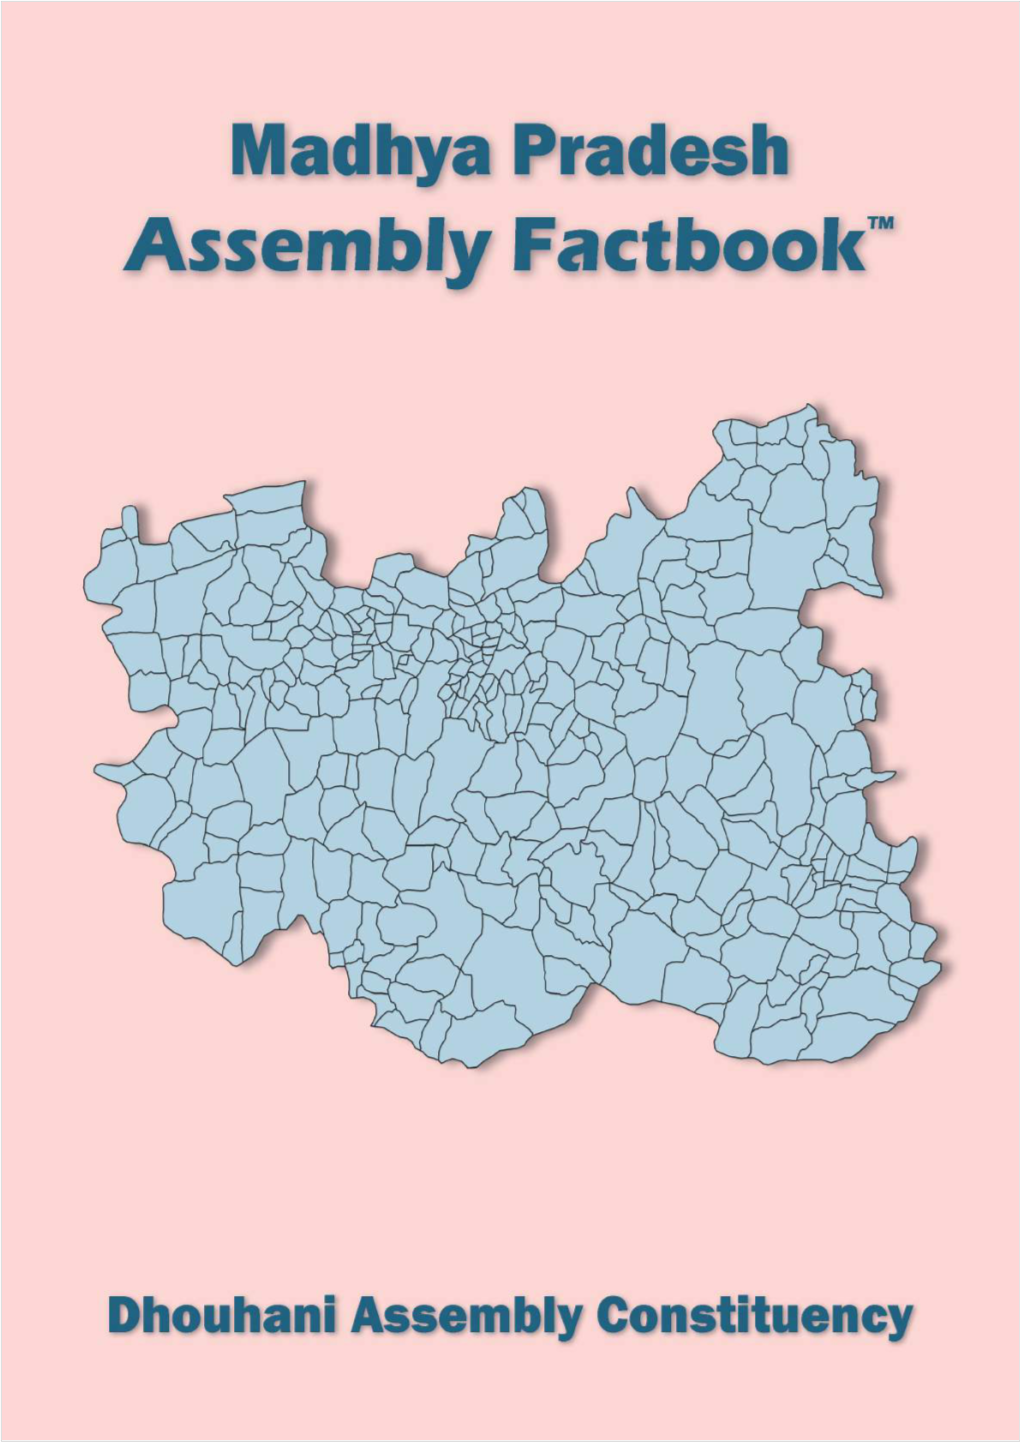 Dhouhani Assembly Madhya Pradesh Factbook